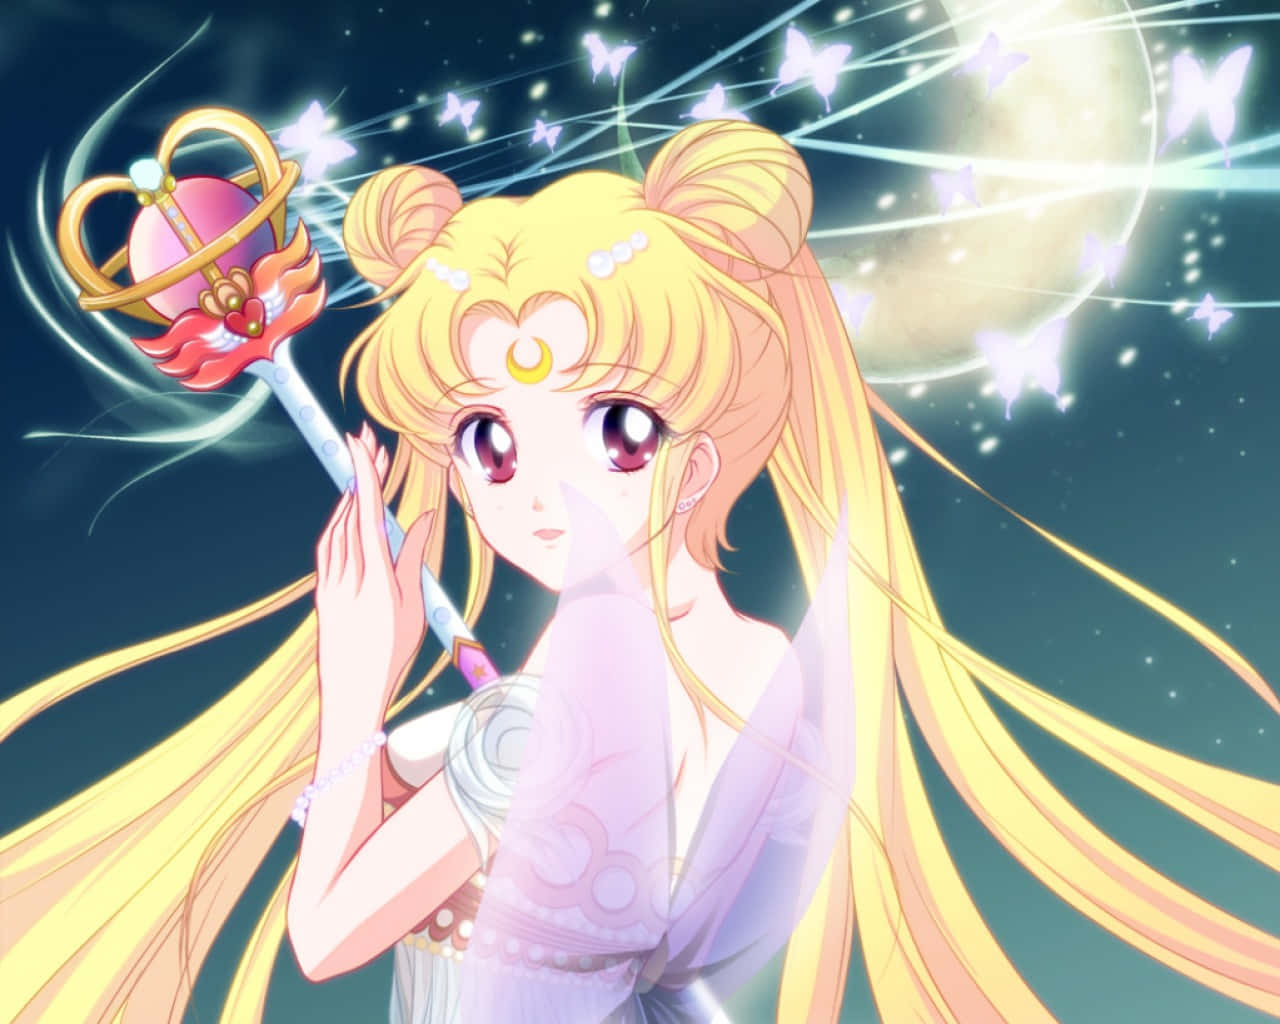 Usagi Tsukino forvandlet som Sailor Moon, klar til kamp. Wallpaper